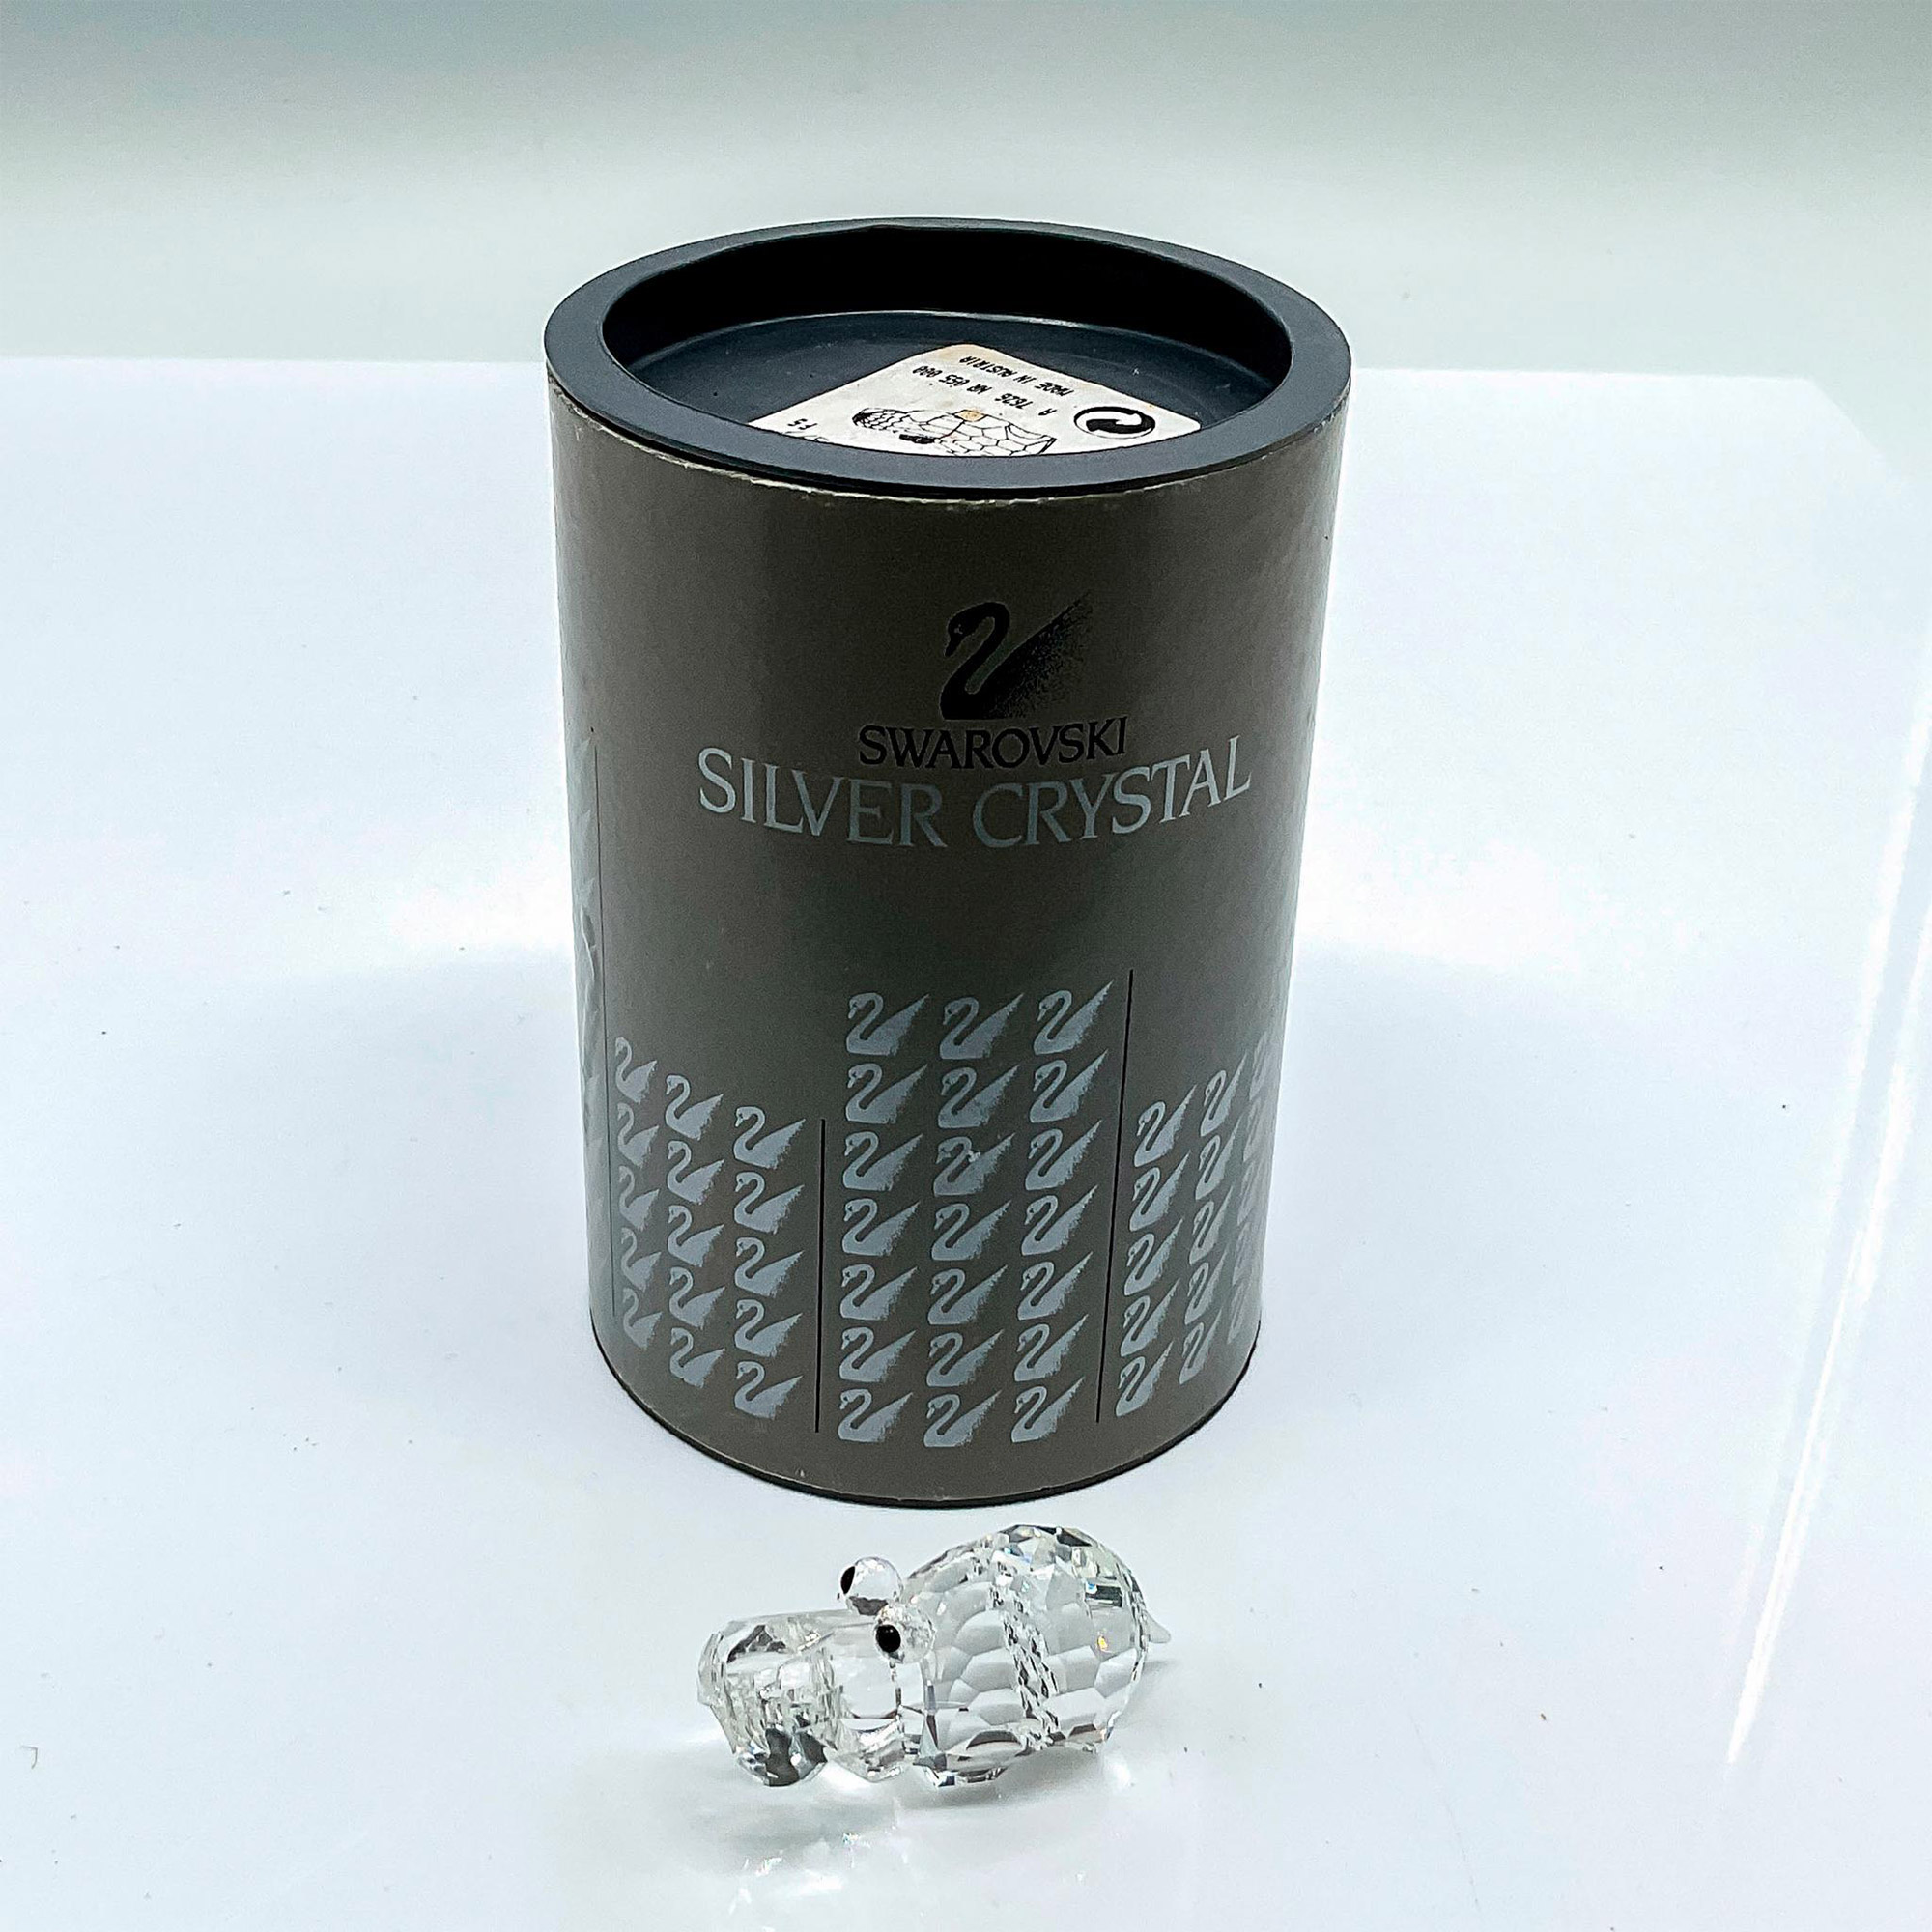 Swarovski Silver Crystal Figurine, Small Hippopotamus - Image 4 of 4